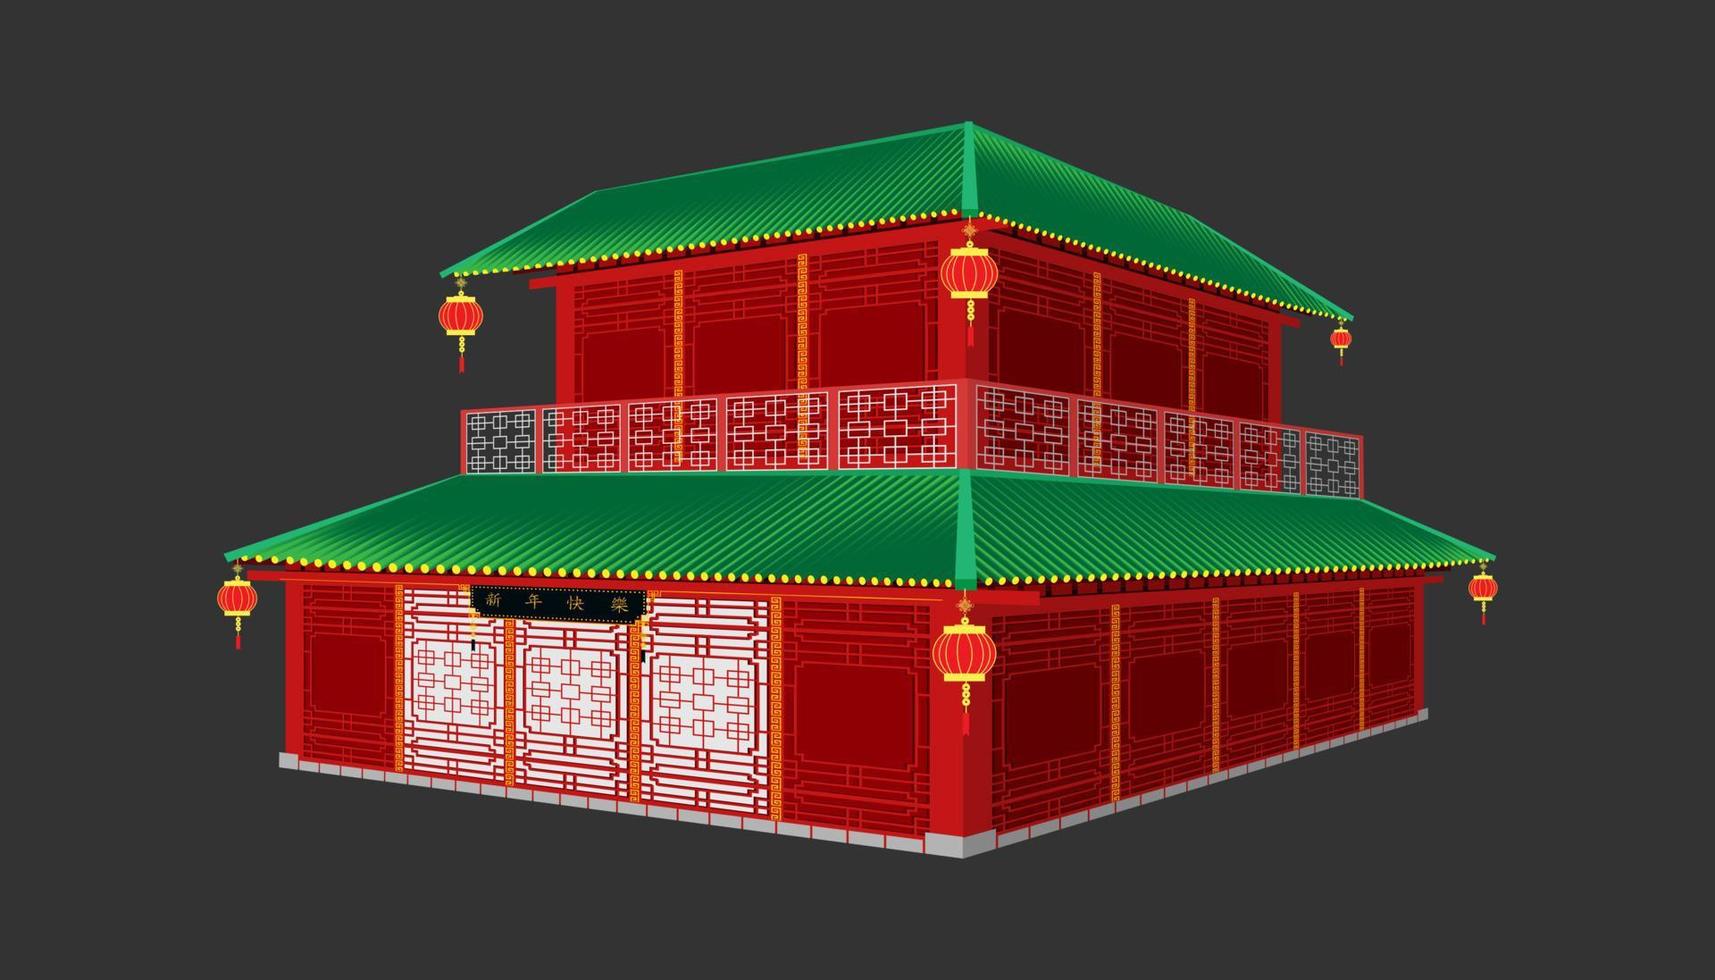 casa tridimensionale tradizionale cinese a due piani c'è un muro con un motivo in legno rosso con un po' di nero. niente porte e finestre. illustrazione vettoriale eps10.